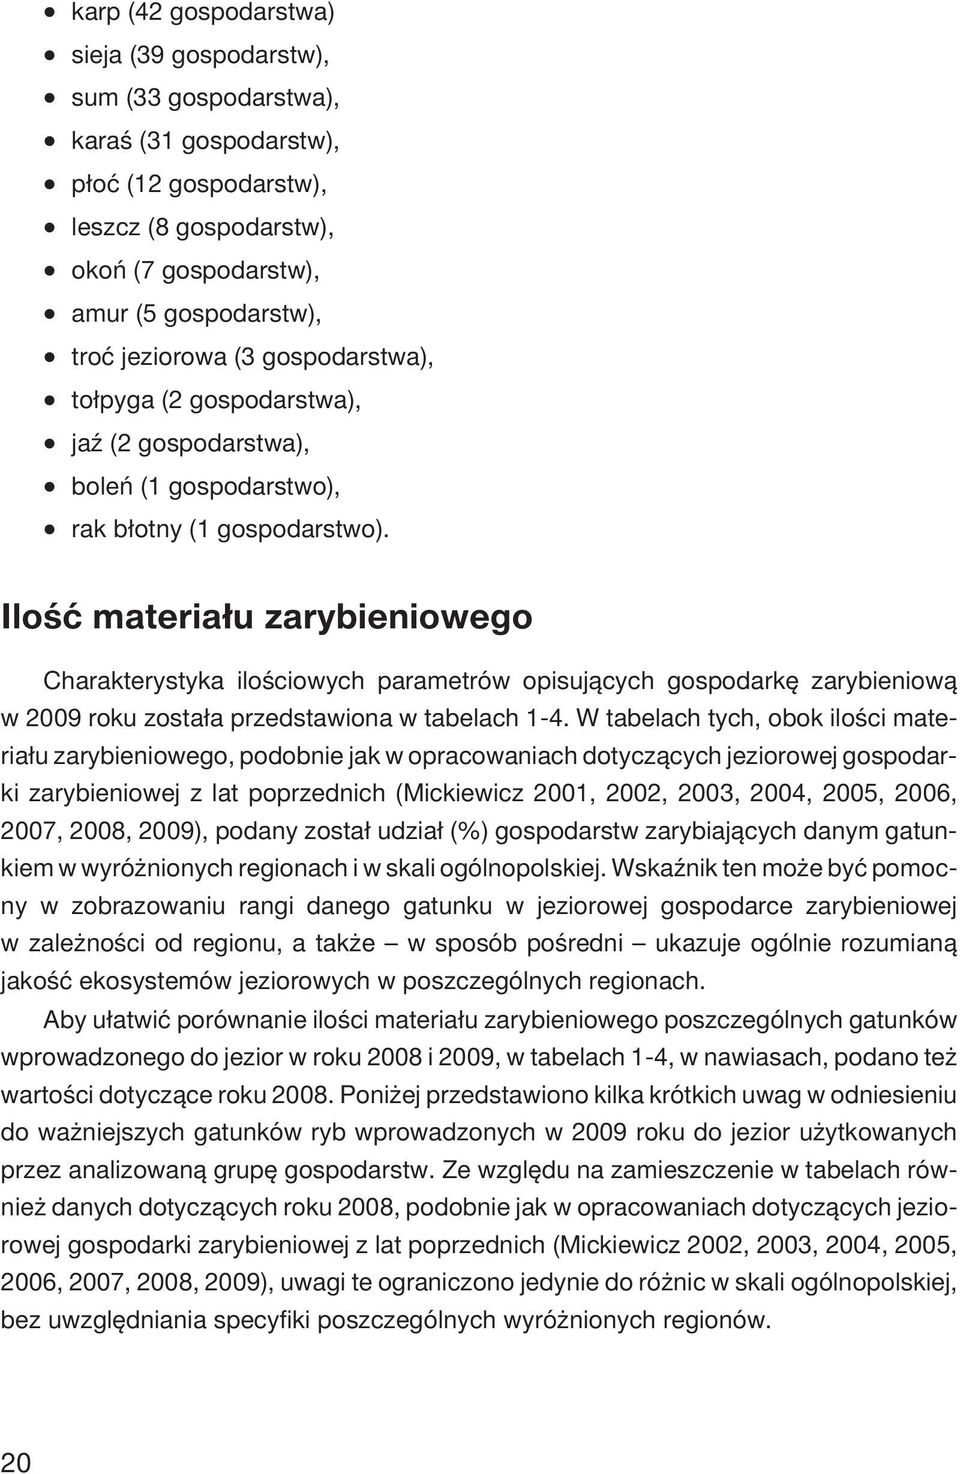 Iloœæ materia³u zarybieniowego Charakterystyka iloœciowych parametrów opisuj¹cych gospodarkê zarybieniow¹ w 2009 roku zosta³a przedstawiona w tabelach 1-4.